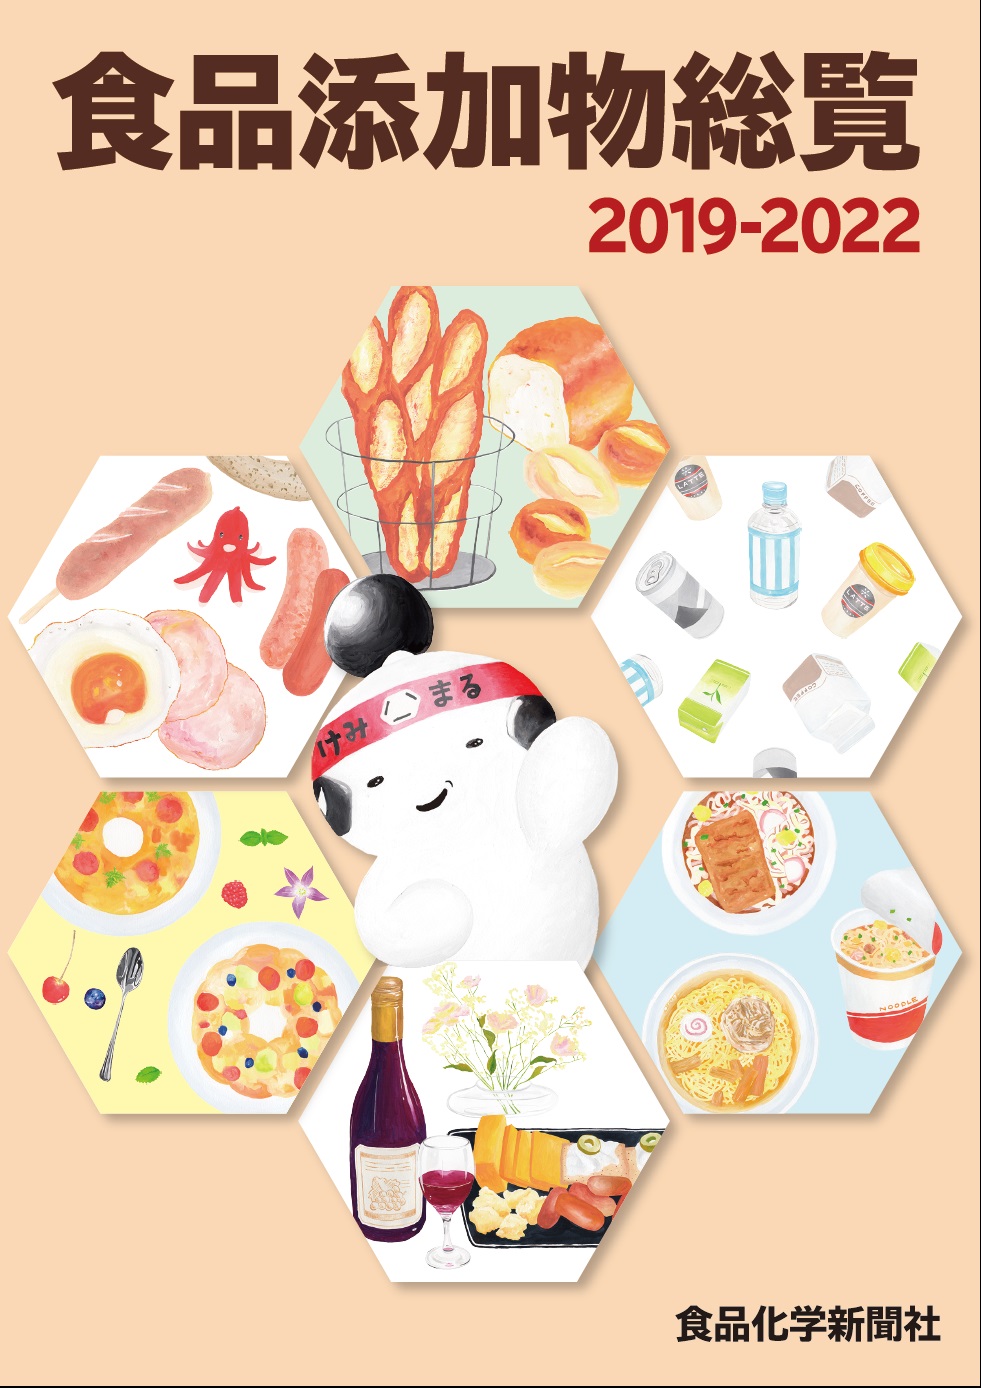 食品添加物総覧2019-2022